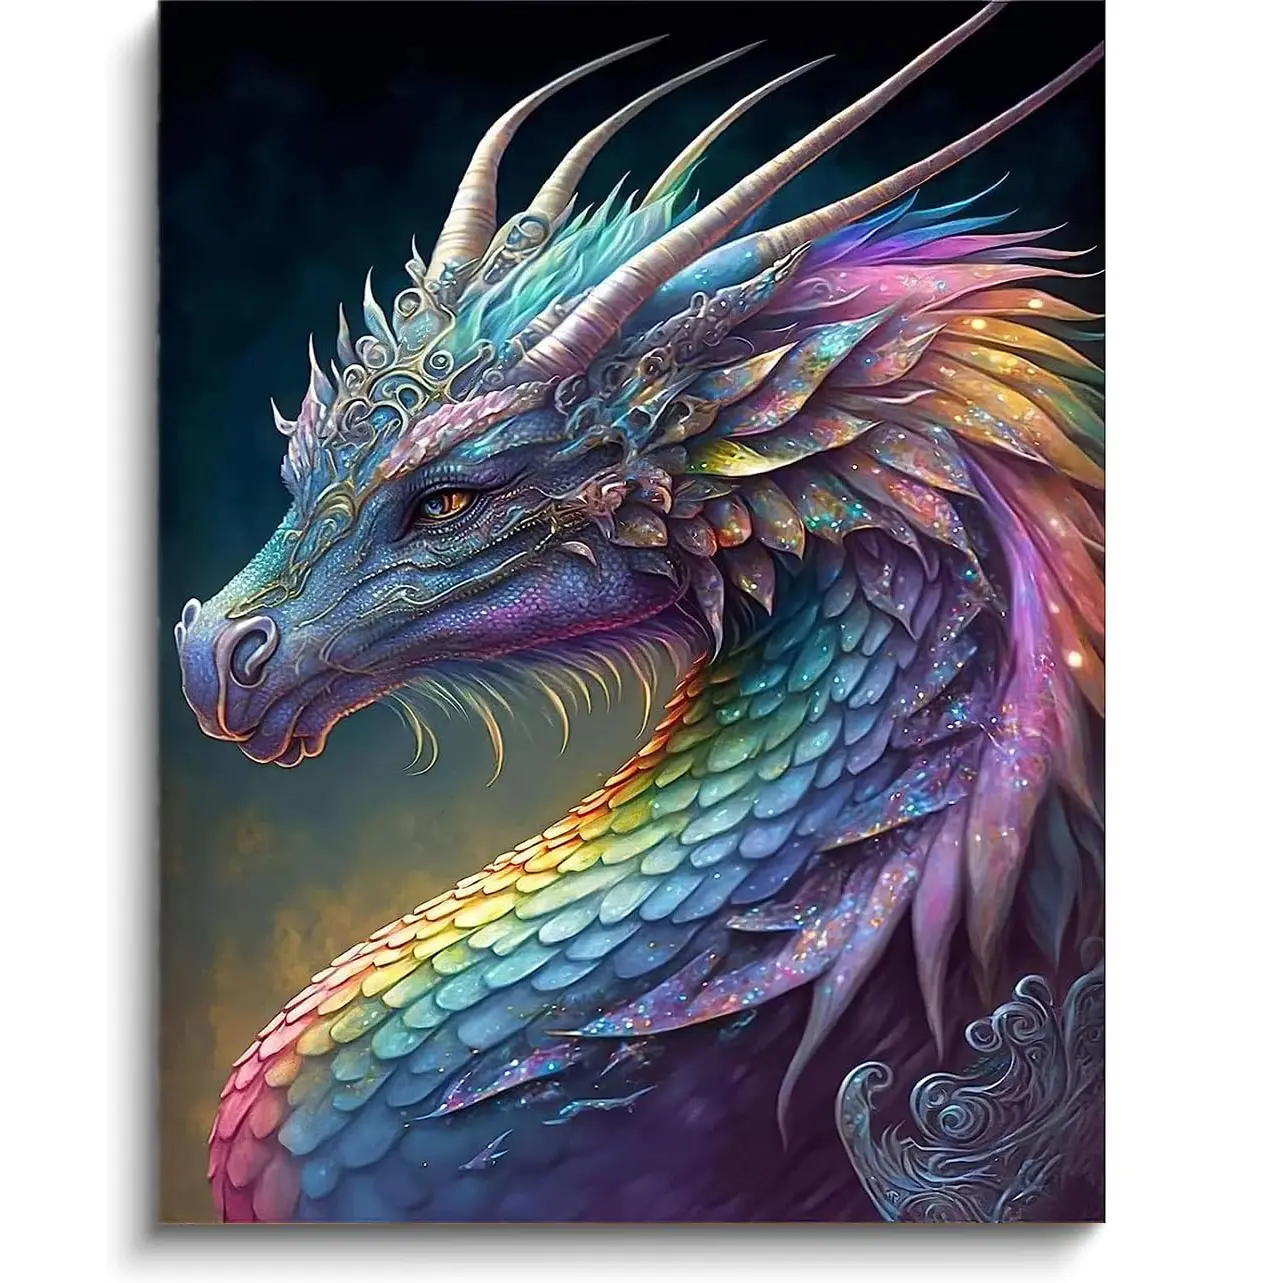 5D coloré Dragon diamant peinture Dragon Kit pour enfants débutants, bricolage cristal gemme Art pour la décoration murale de la maison